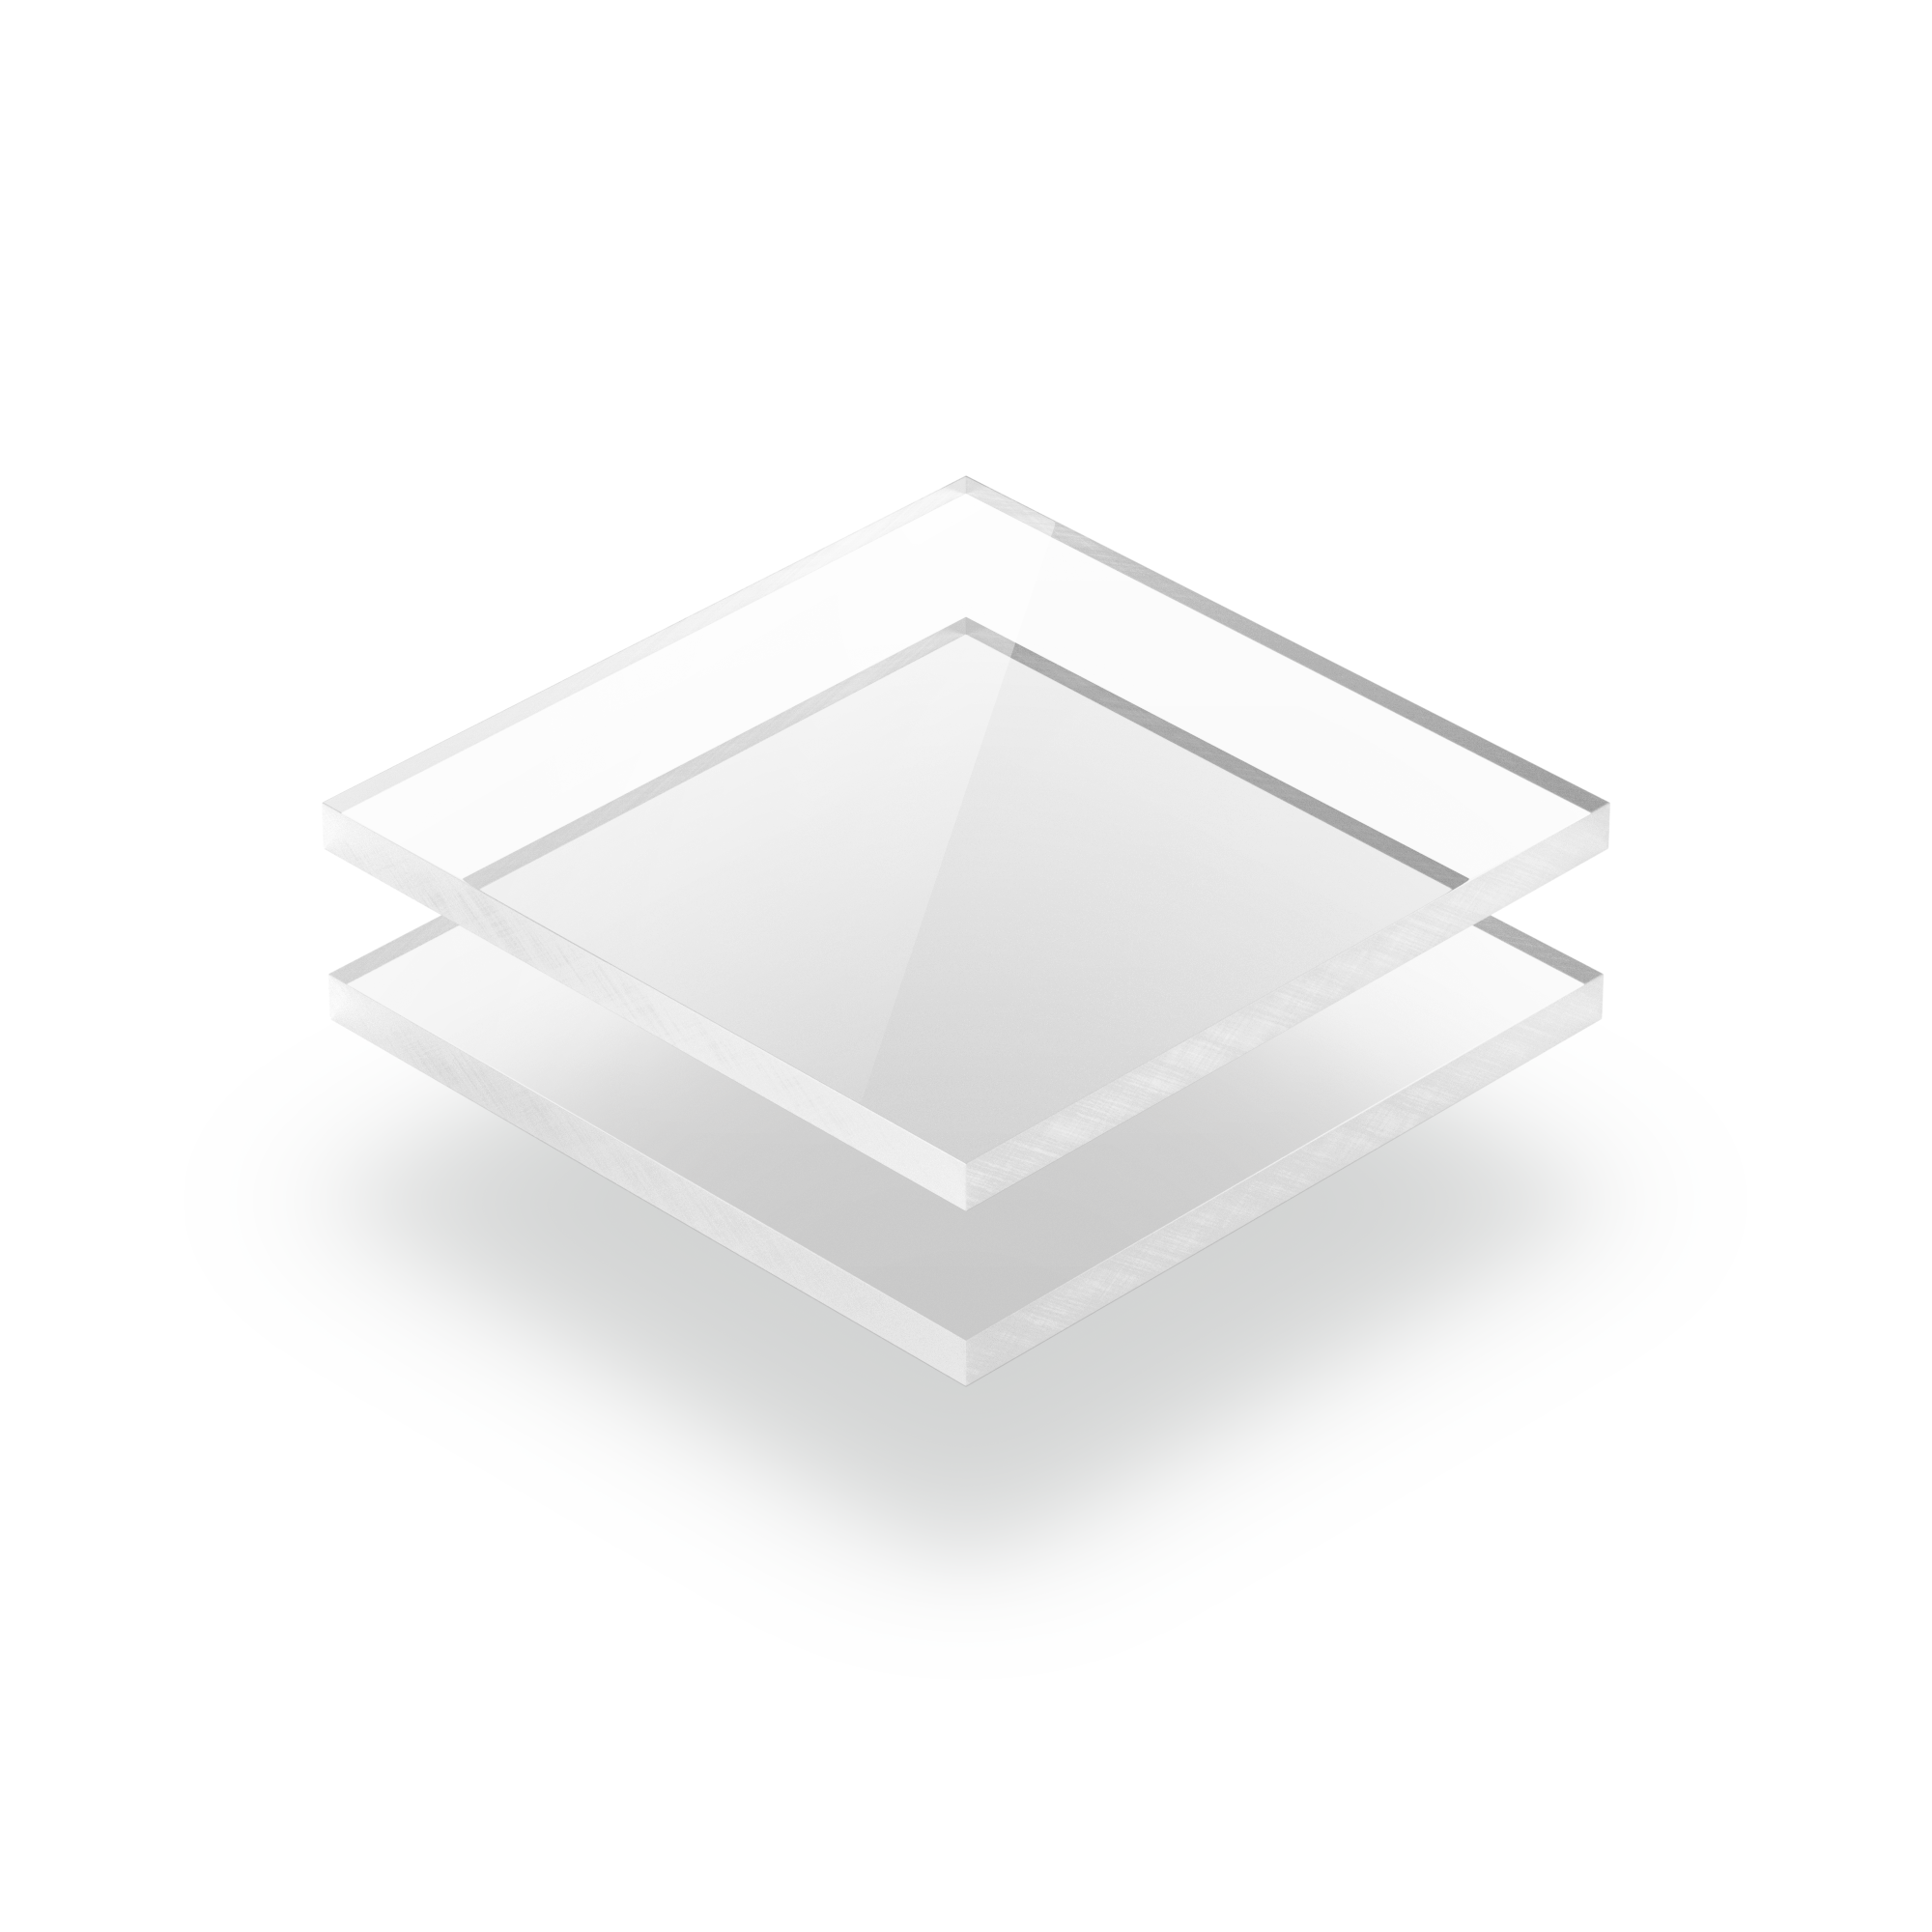 glasklar 2-8mm gelasert Plexiglas Acrylglas abgerundet Zuschnitt Platte transp 